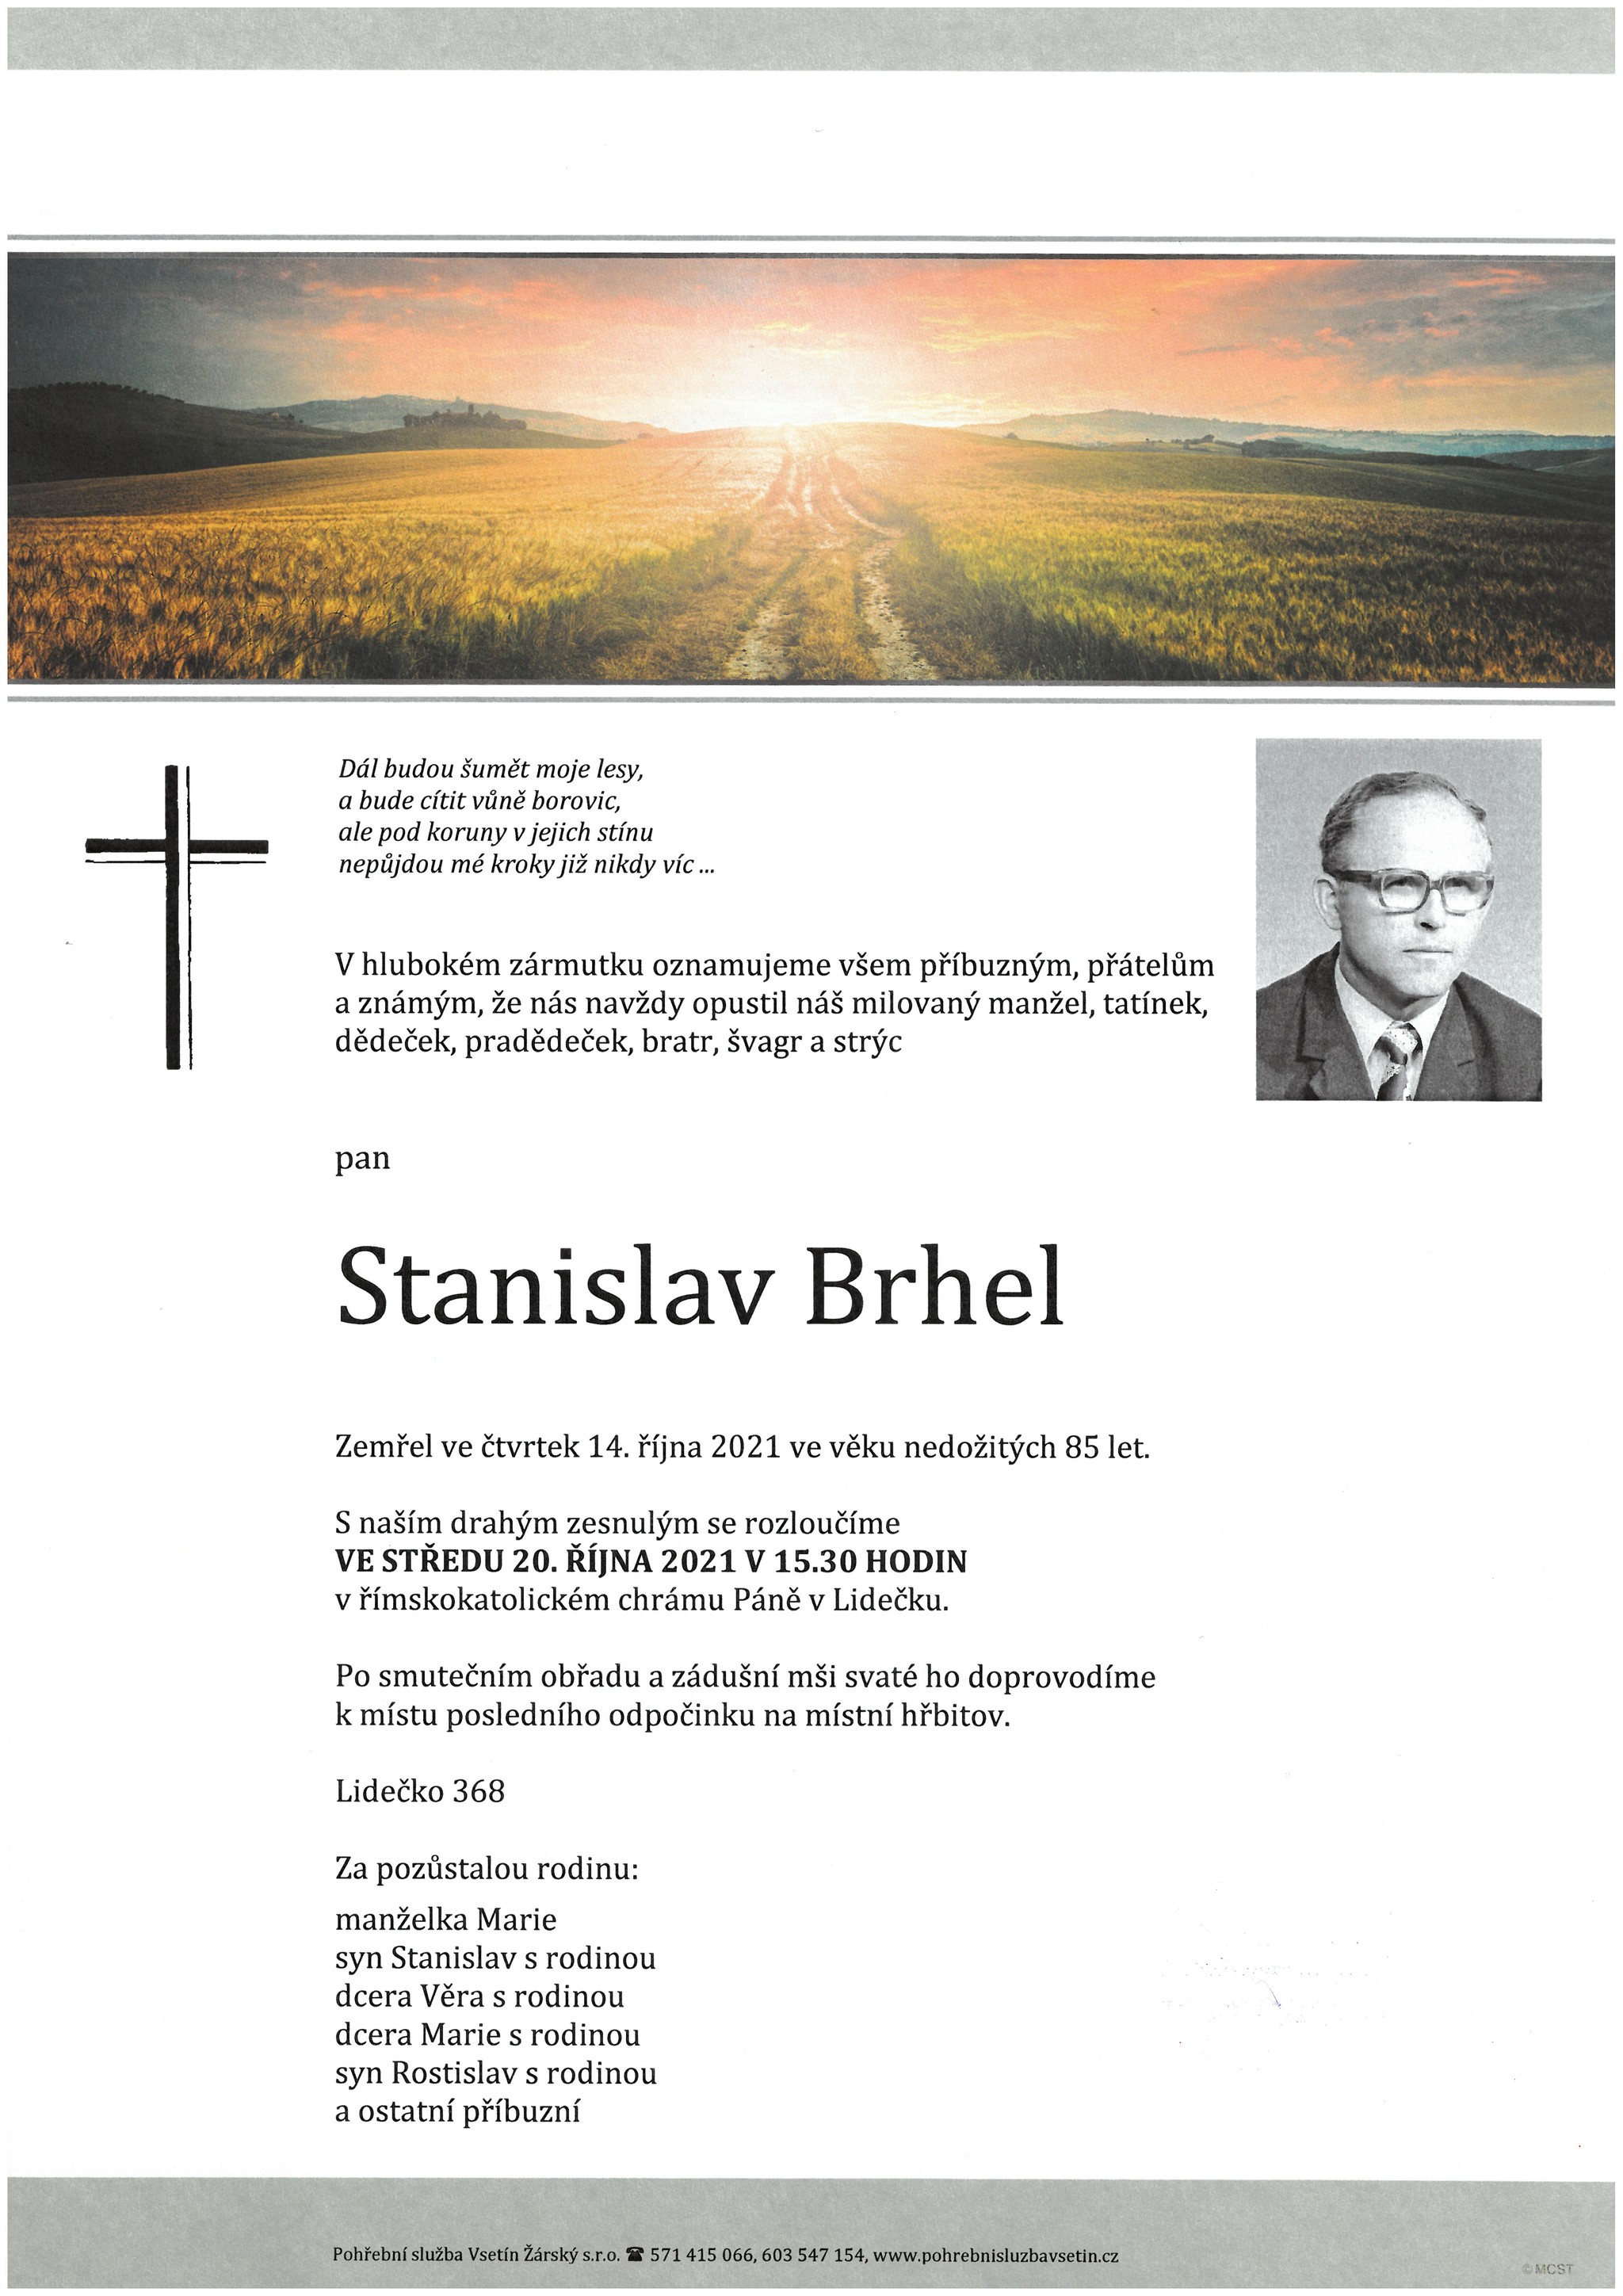 Stanislav Brhel